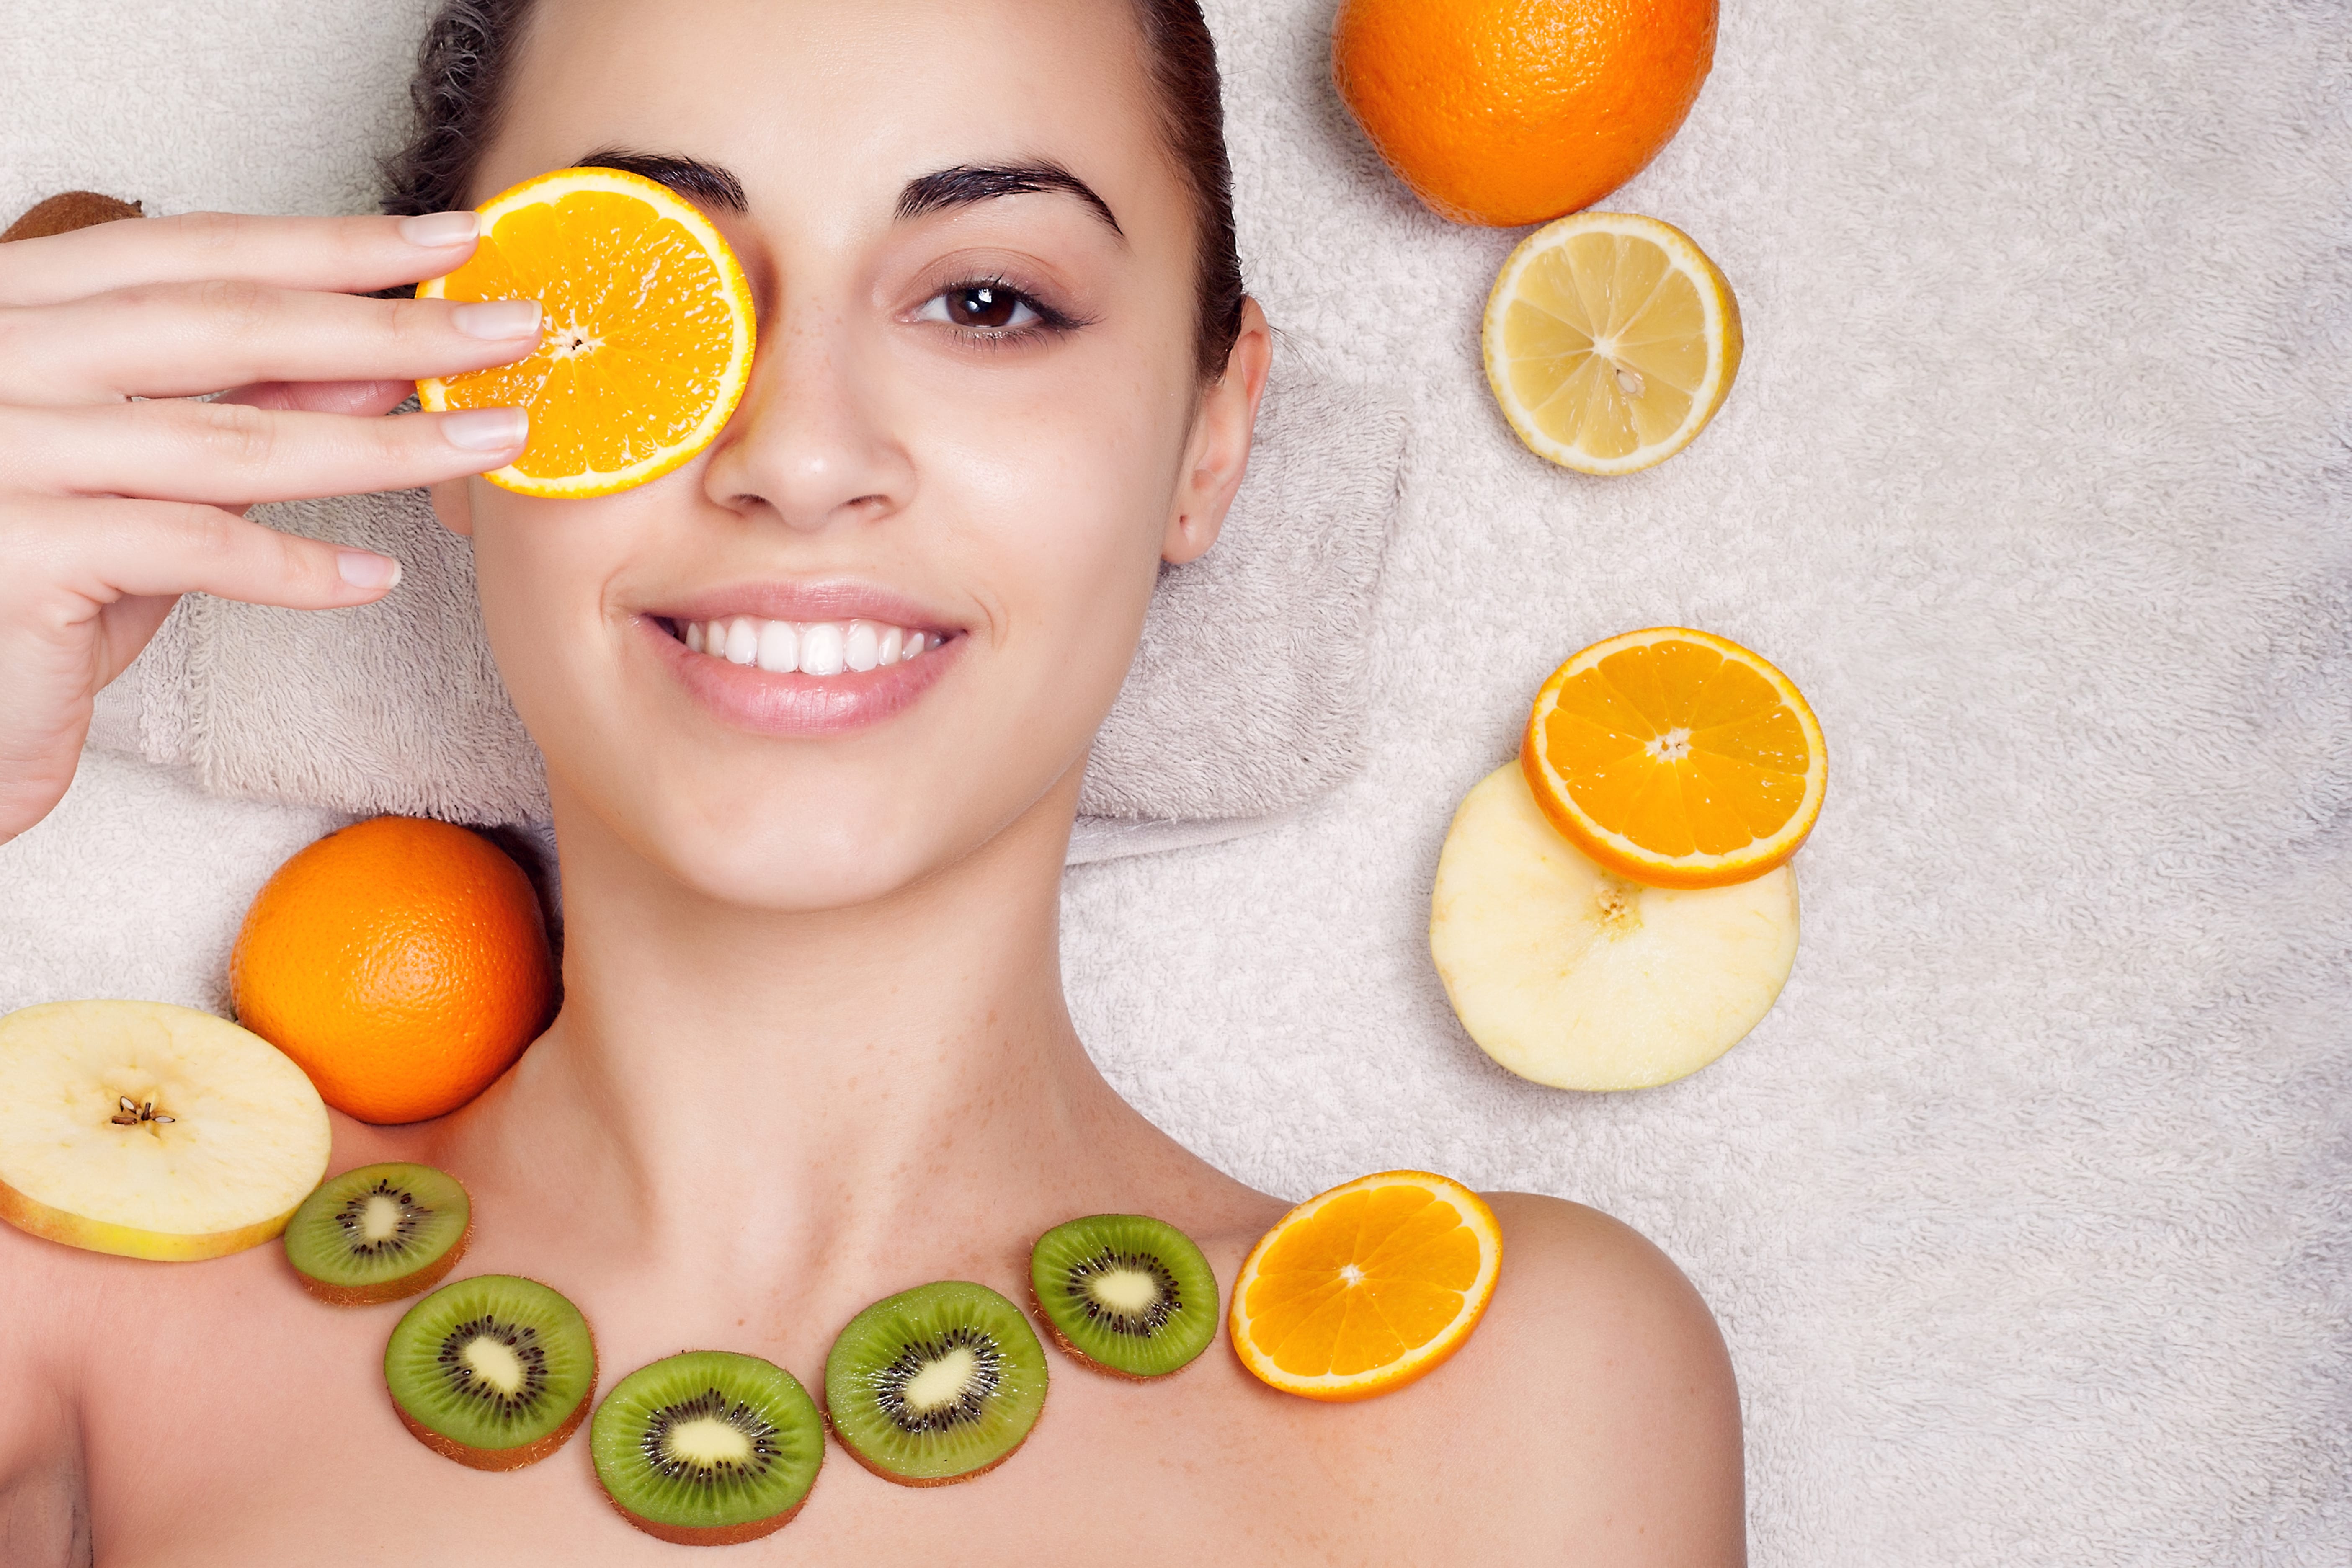 Femeie cu fructe pe ten ingrediente naturale pentru prevenire puncte grasime